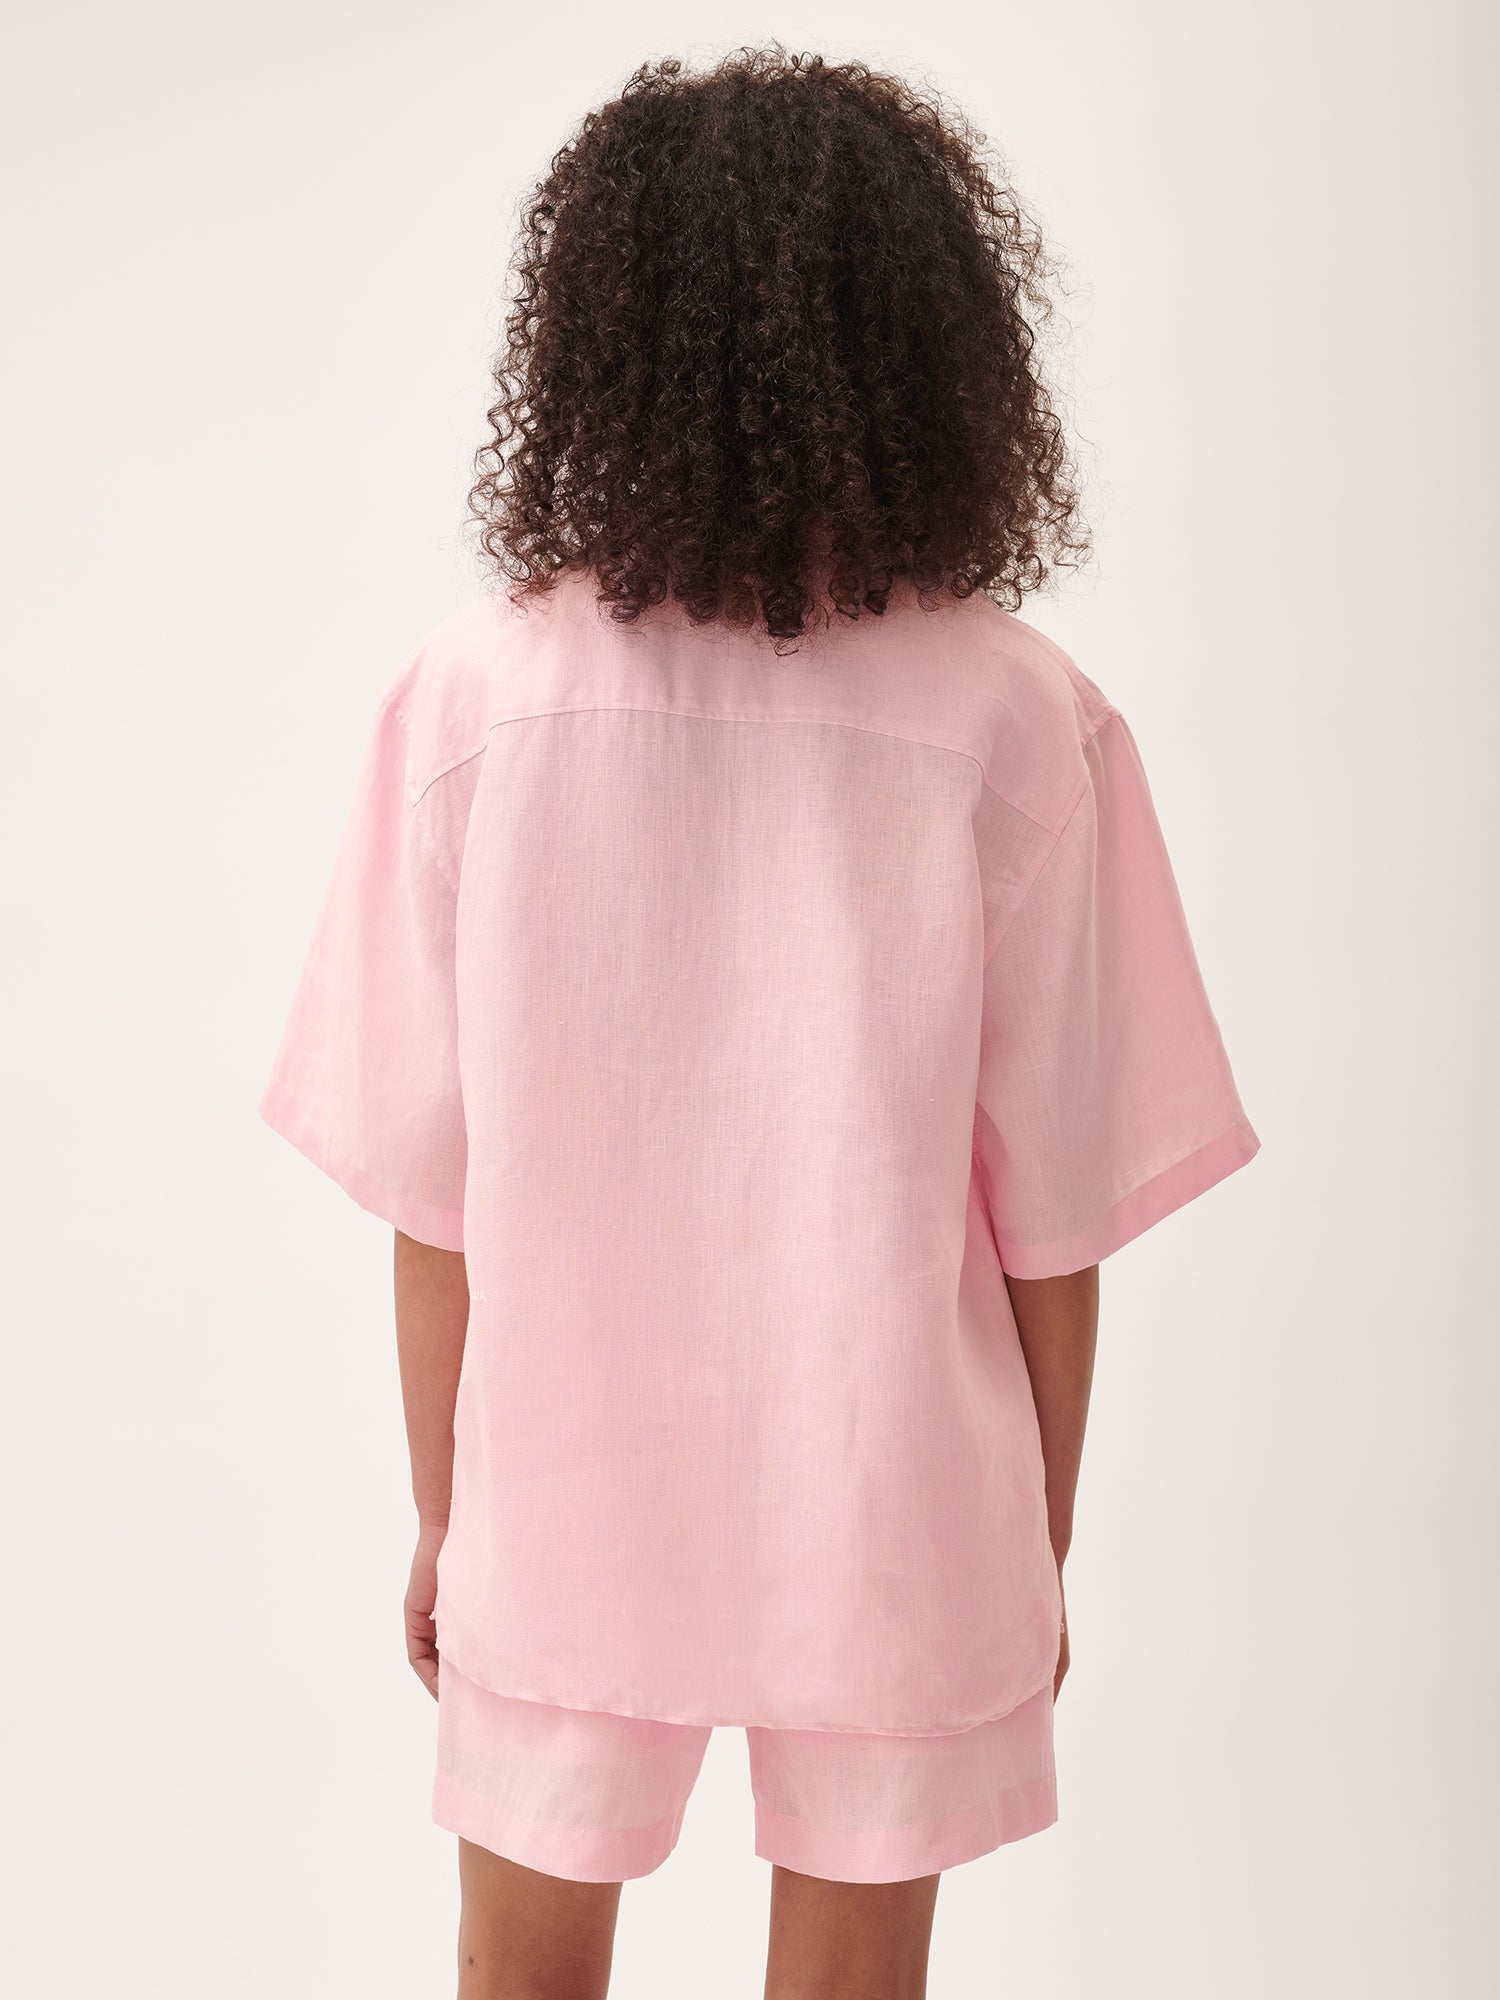 Shop Pangaia Dna Aloe Linen Camp Collar Shirt In Magnolia Pink